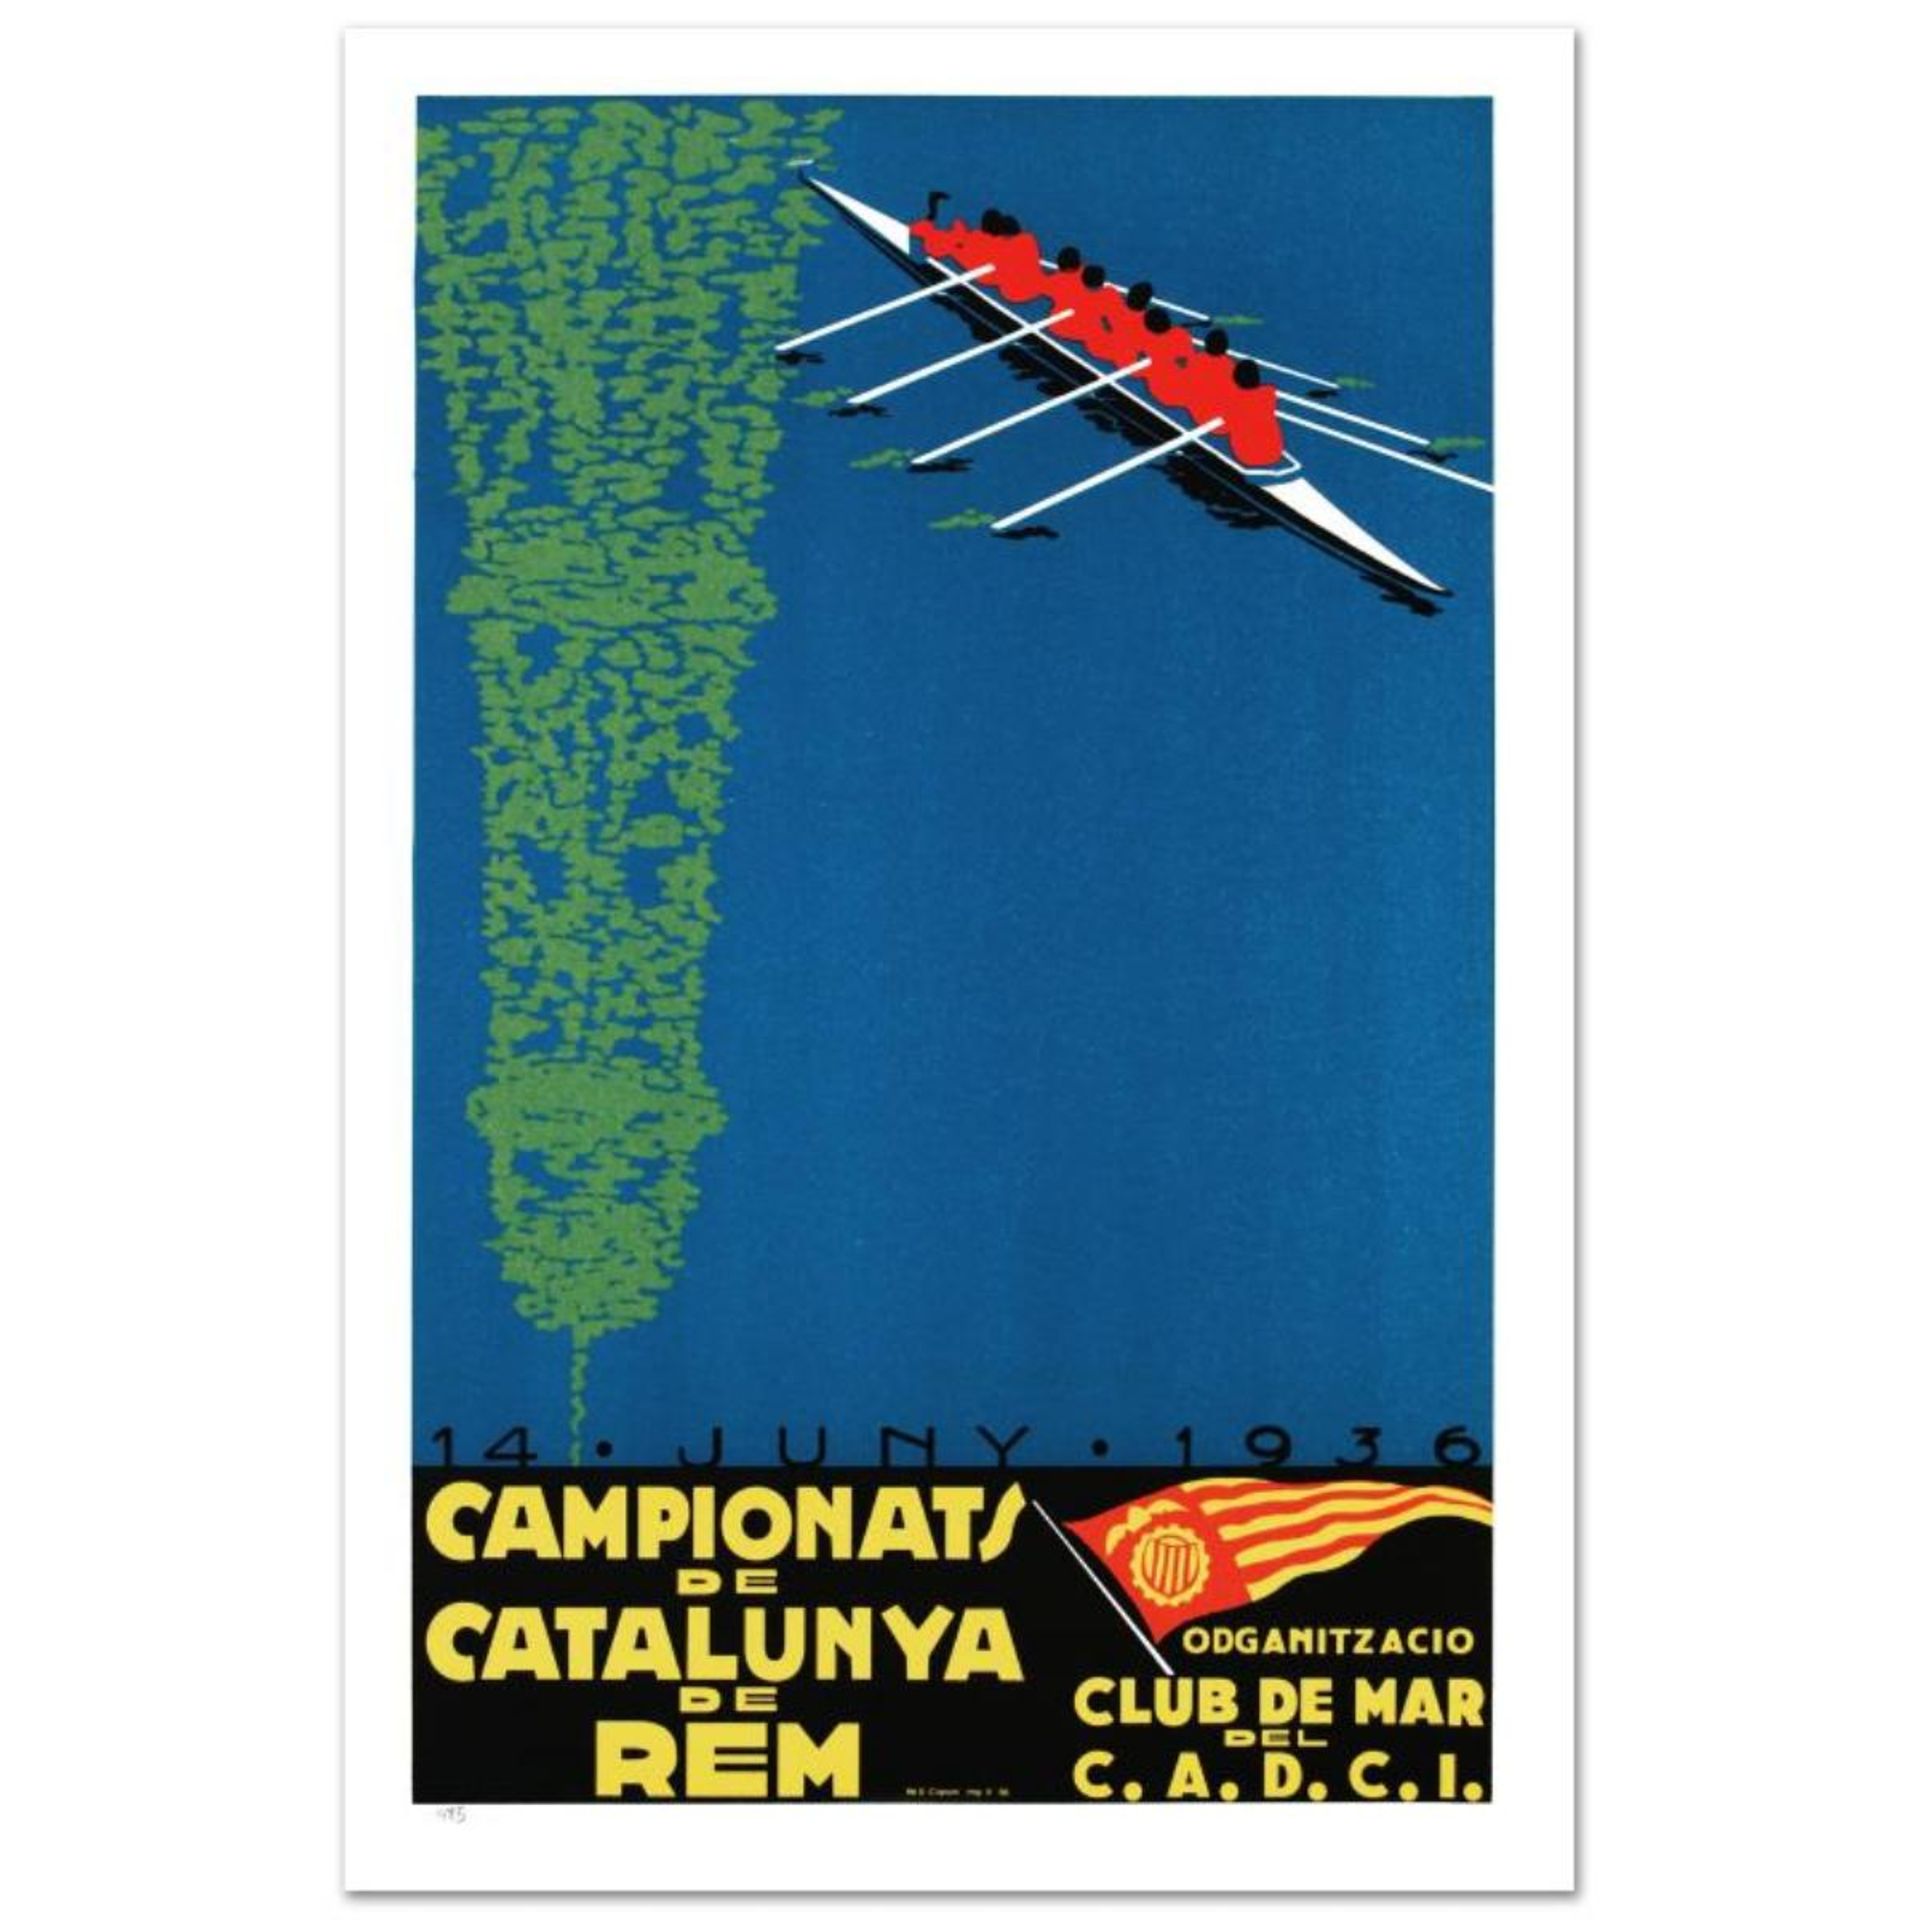 RE Society, "Campionats de Catalunya" Hand Pulled Lithograph, Image Originally b